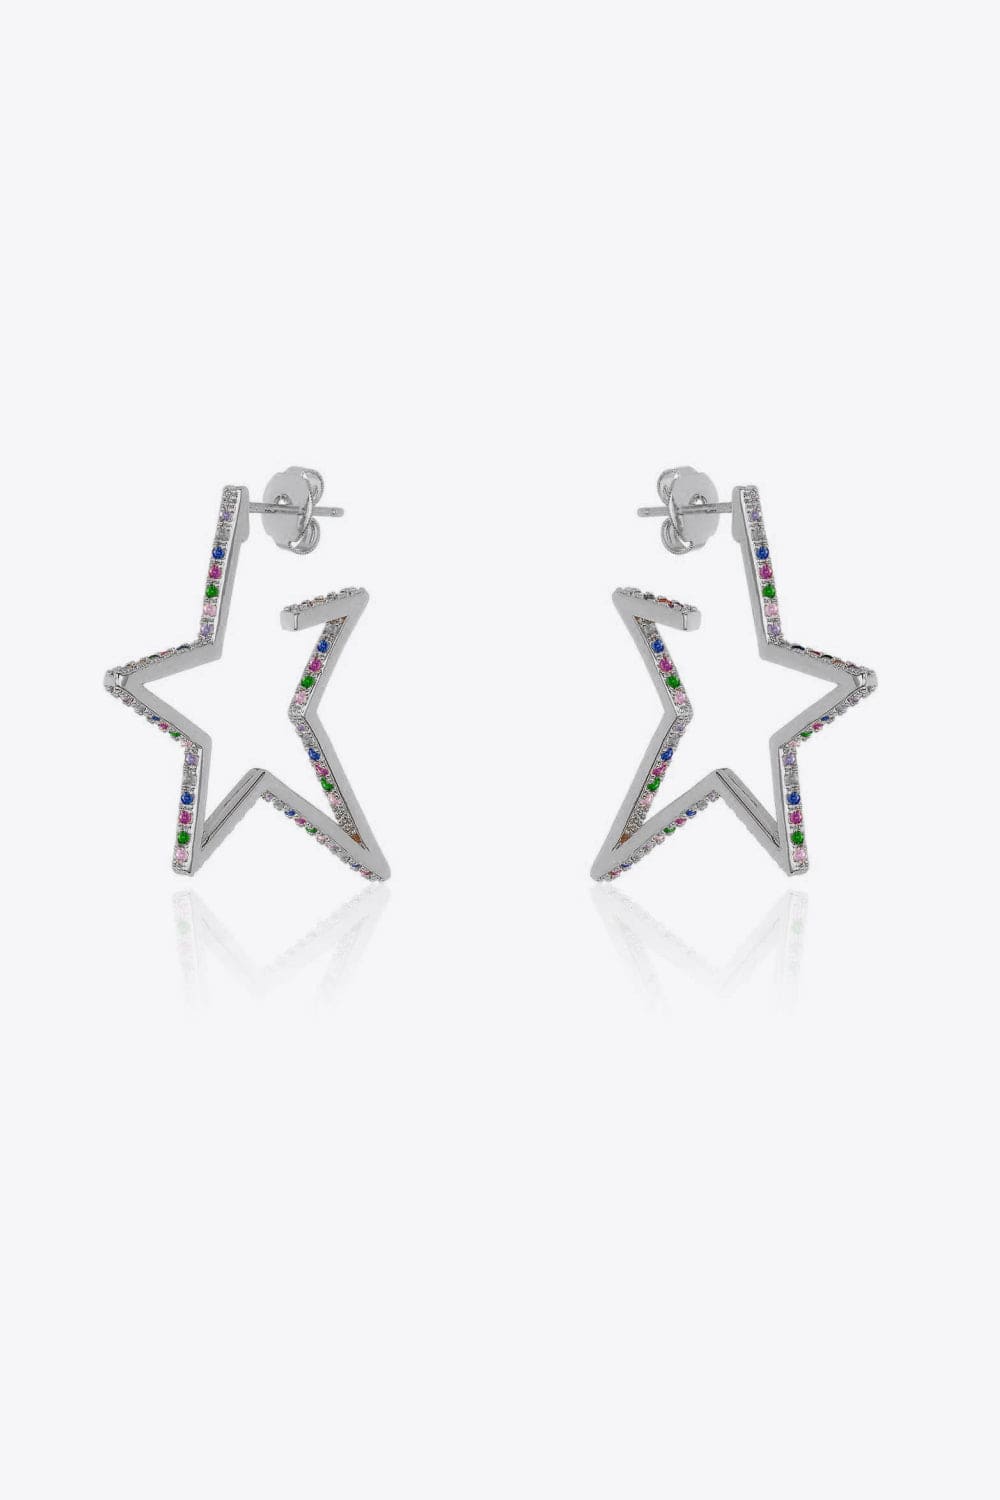 Zircon Star 925 Sterling Silver Earrings COCO CRESS